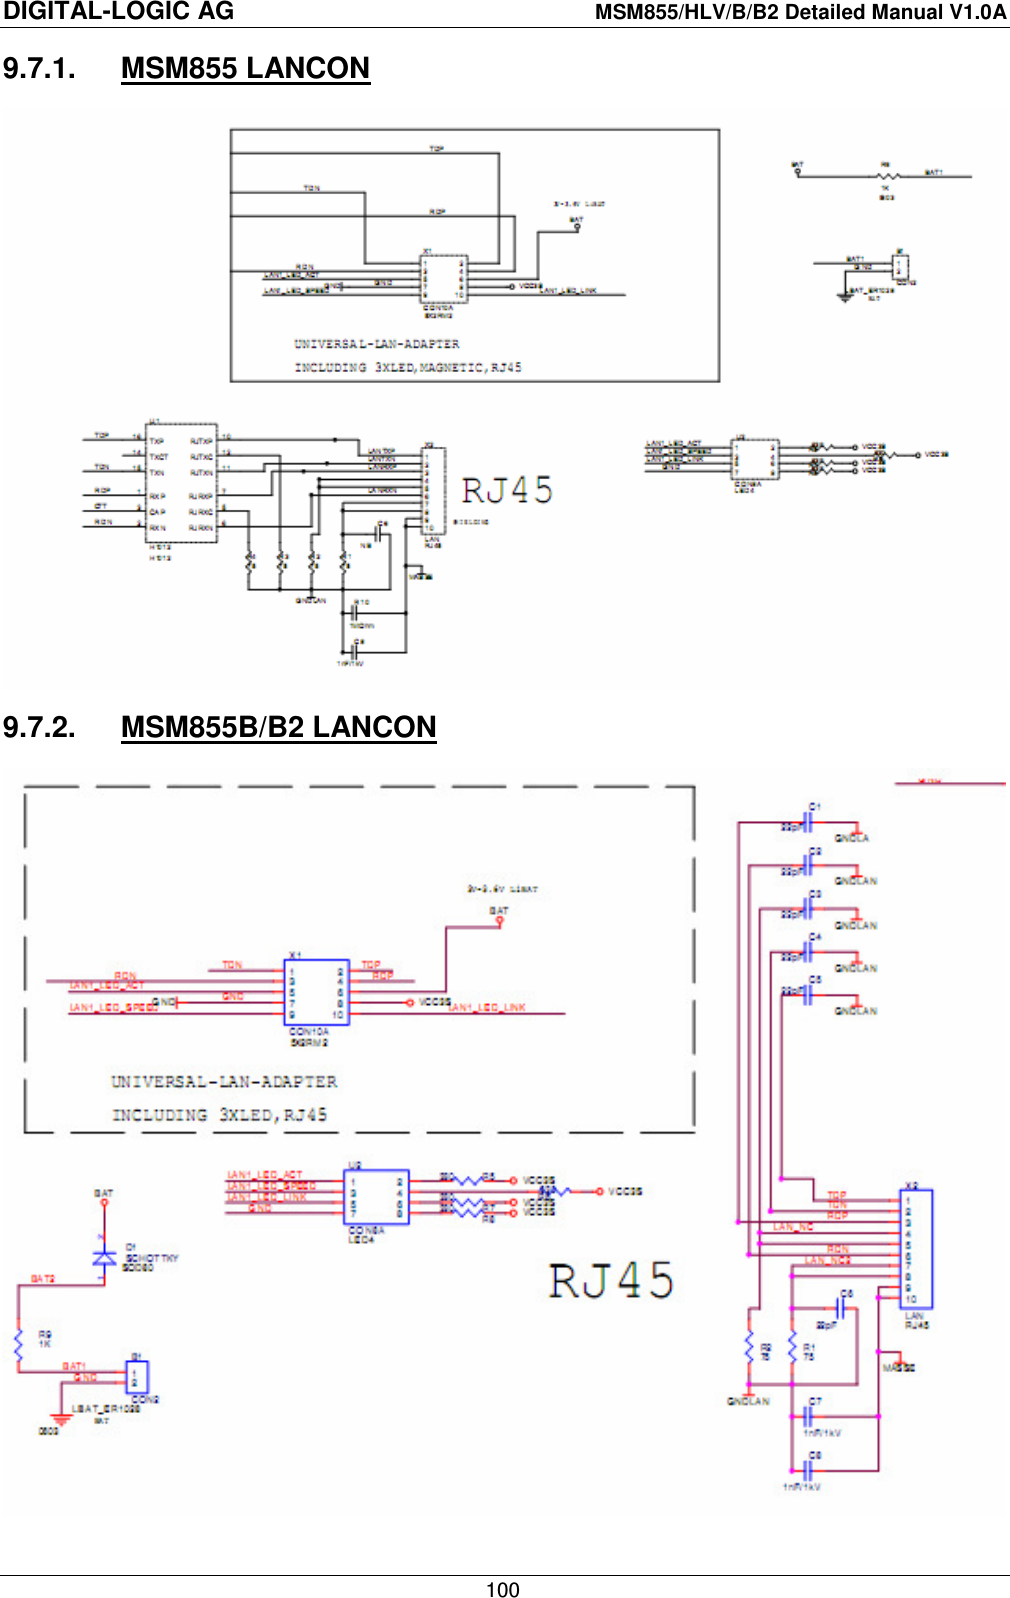 DIGITAL-LOGIC AG    MSM855/HLV/B/B2 Detailed Manual V1.0A    100 9.7.1.  MSM855 LANCON  9.7.2.  MSM855B/B2 LANCON  